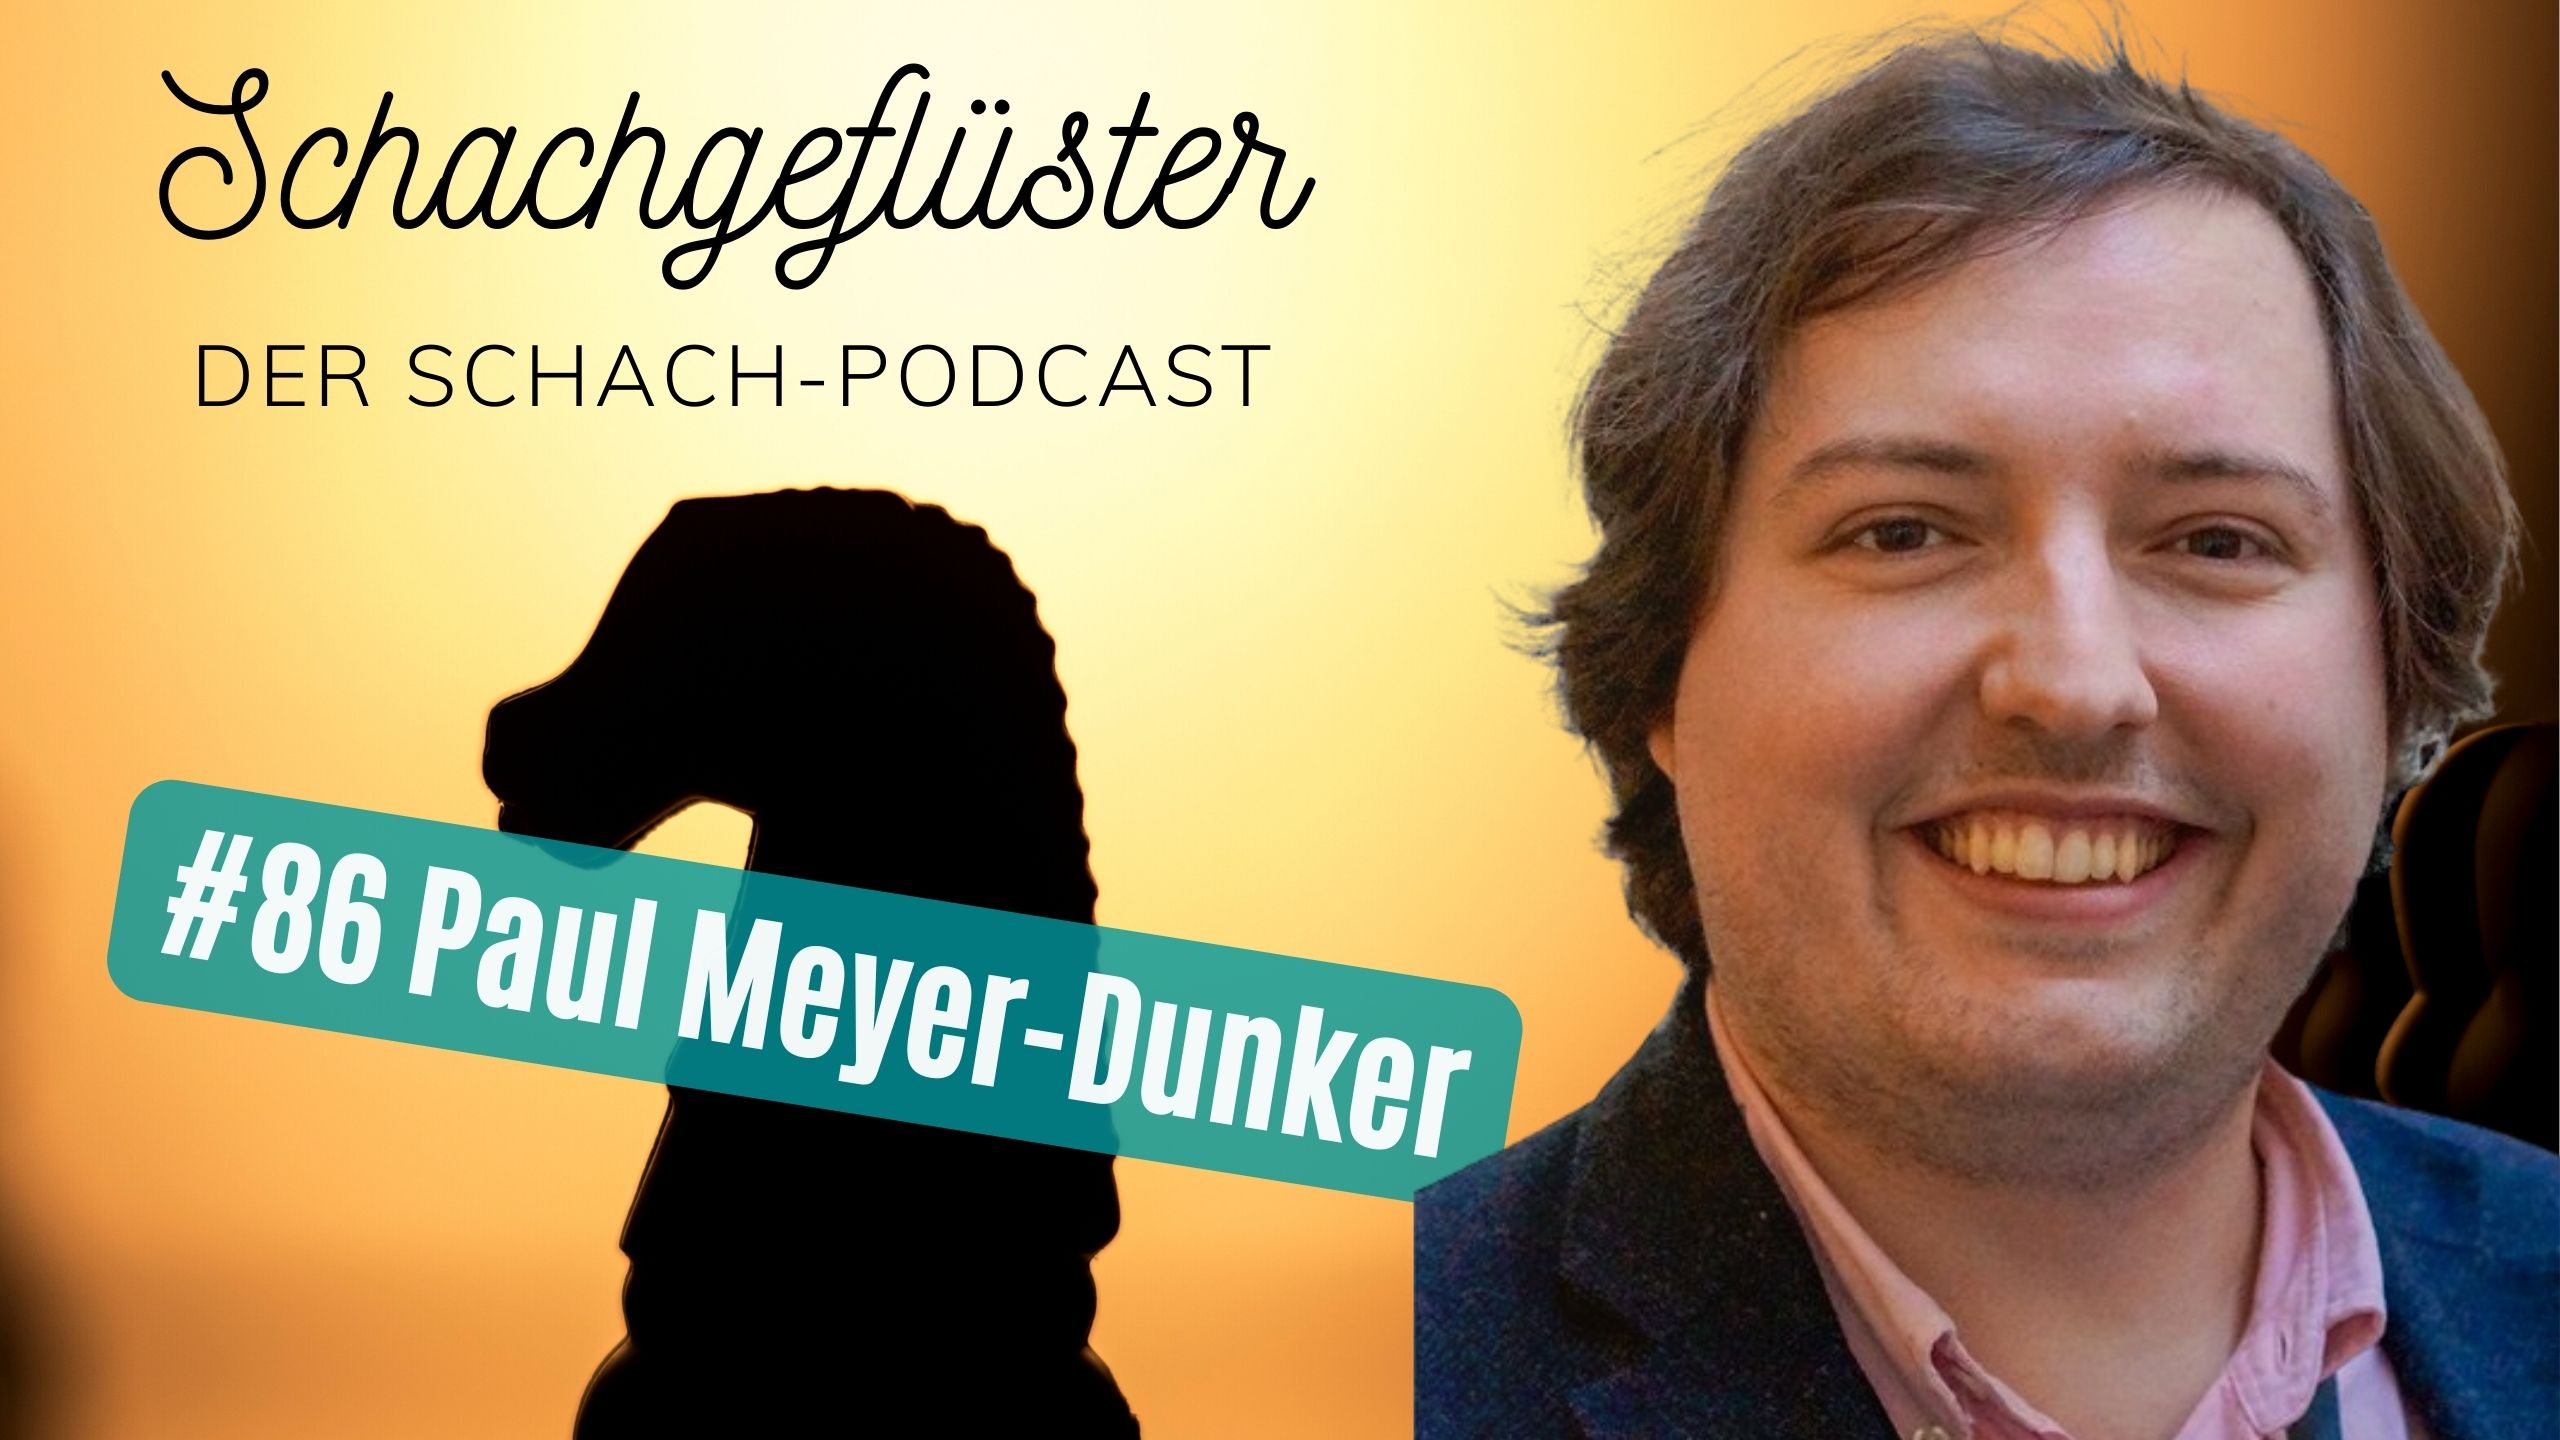 Paul Meyer-Dunker